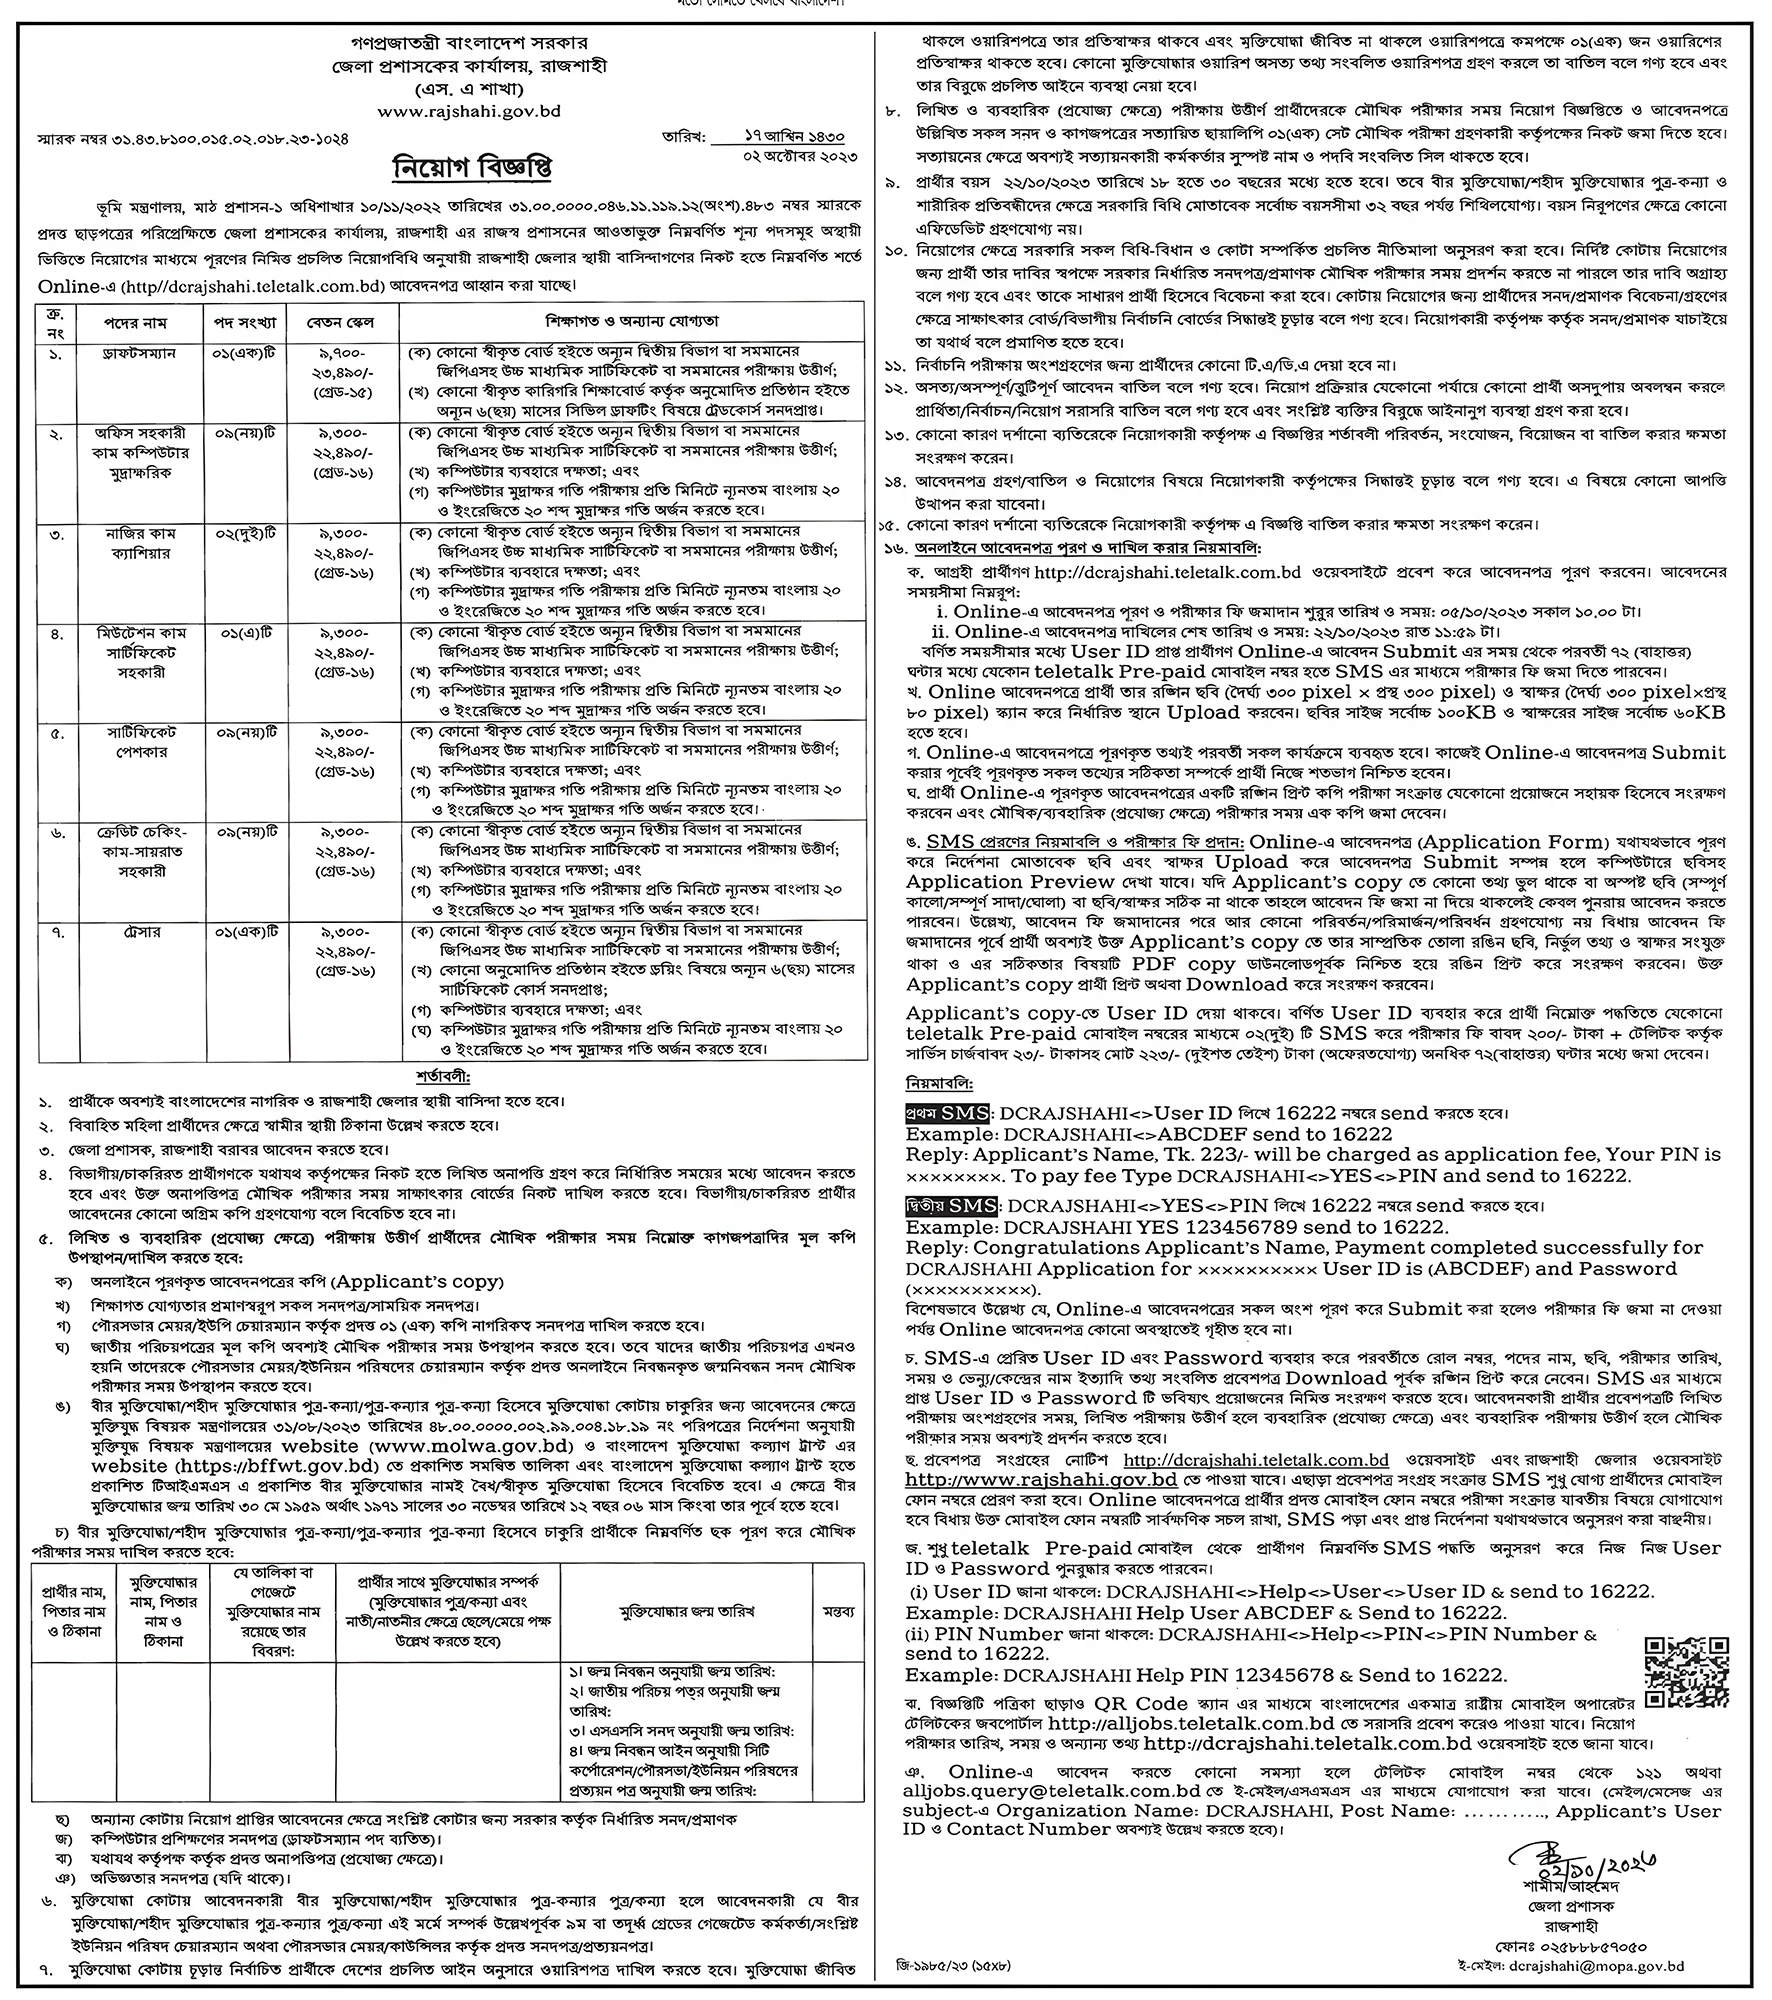 Rajshahi DC Office Job Circular 2023